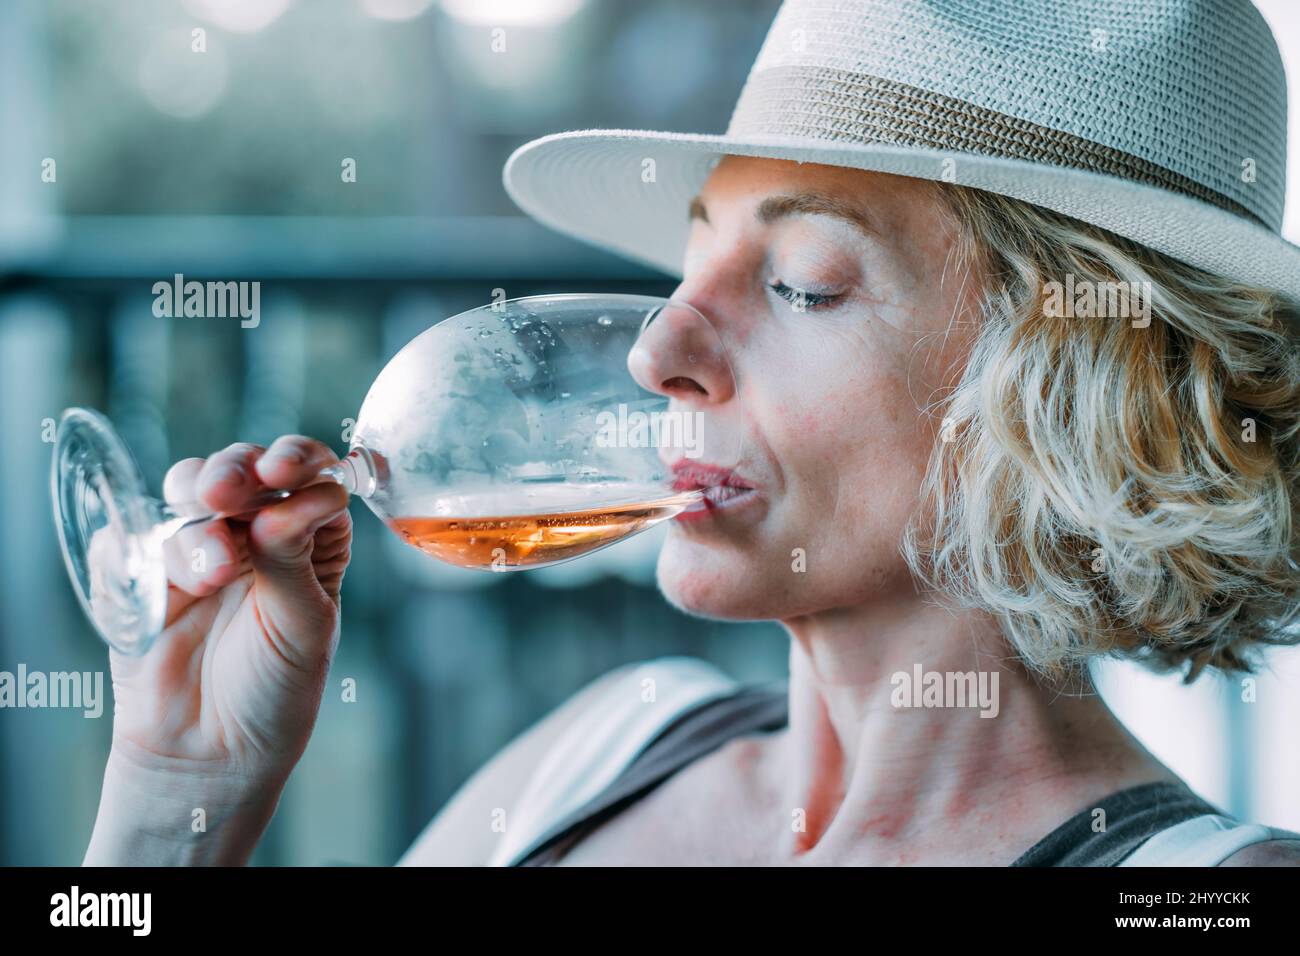 Porträt einer reifen kaukasischen blonden jungen Frau im Alter von 50s Jahren, die einen Hut trägt und ein Glas Wein auf der Veranda eines Landhauses verkostet. Lifestyle c Stockfoto